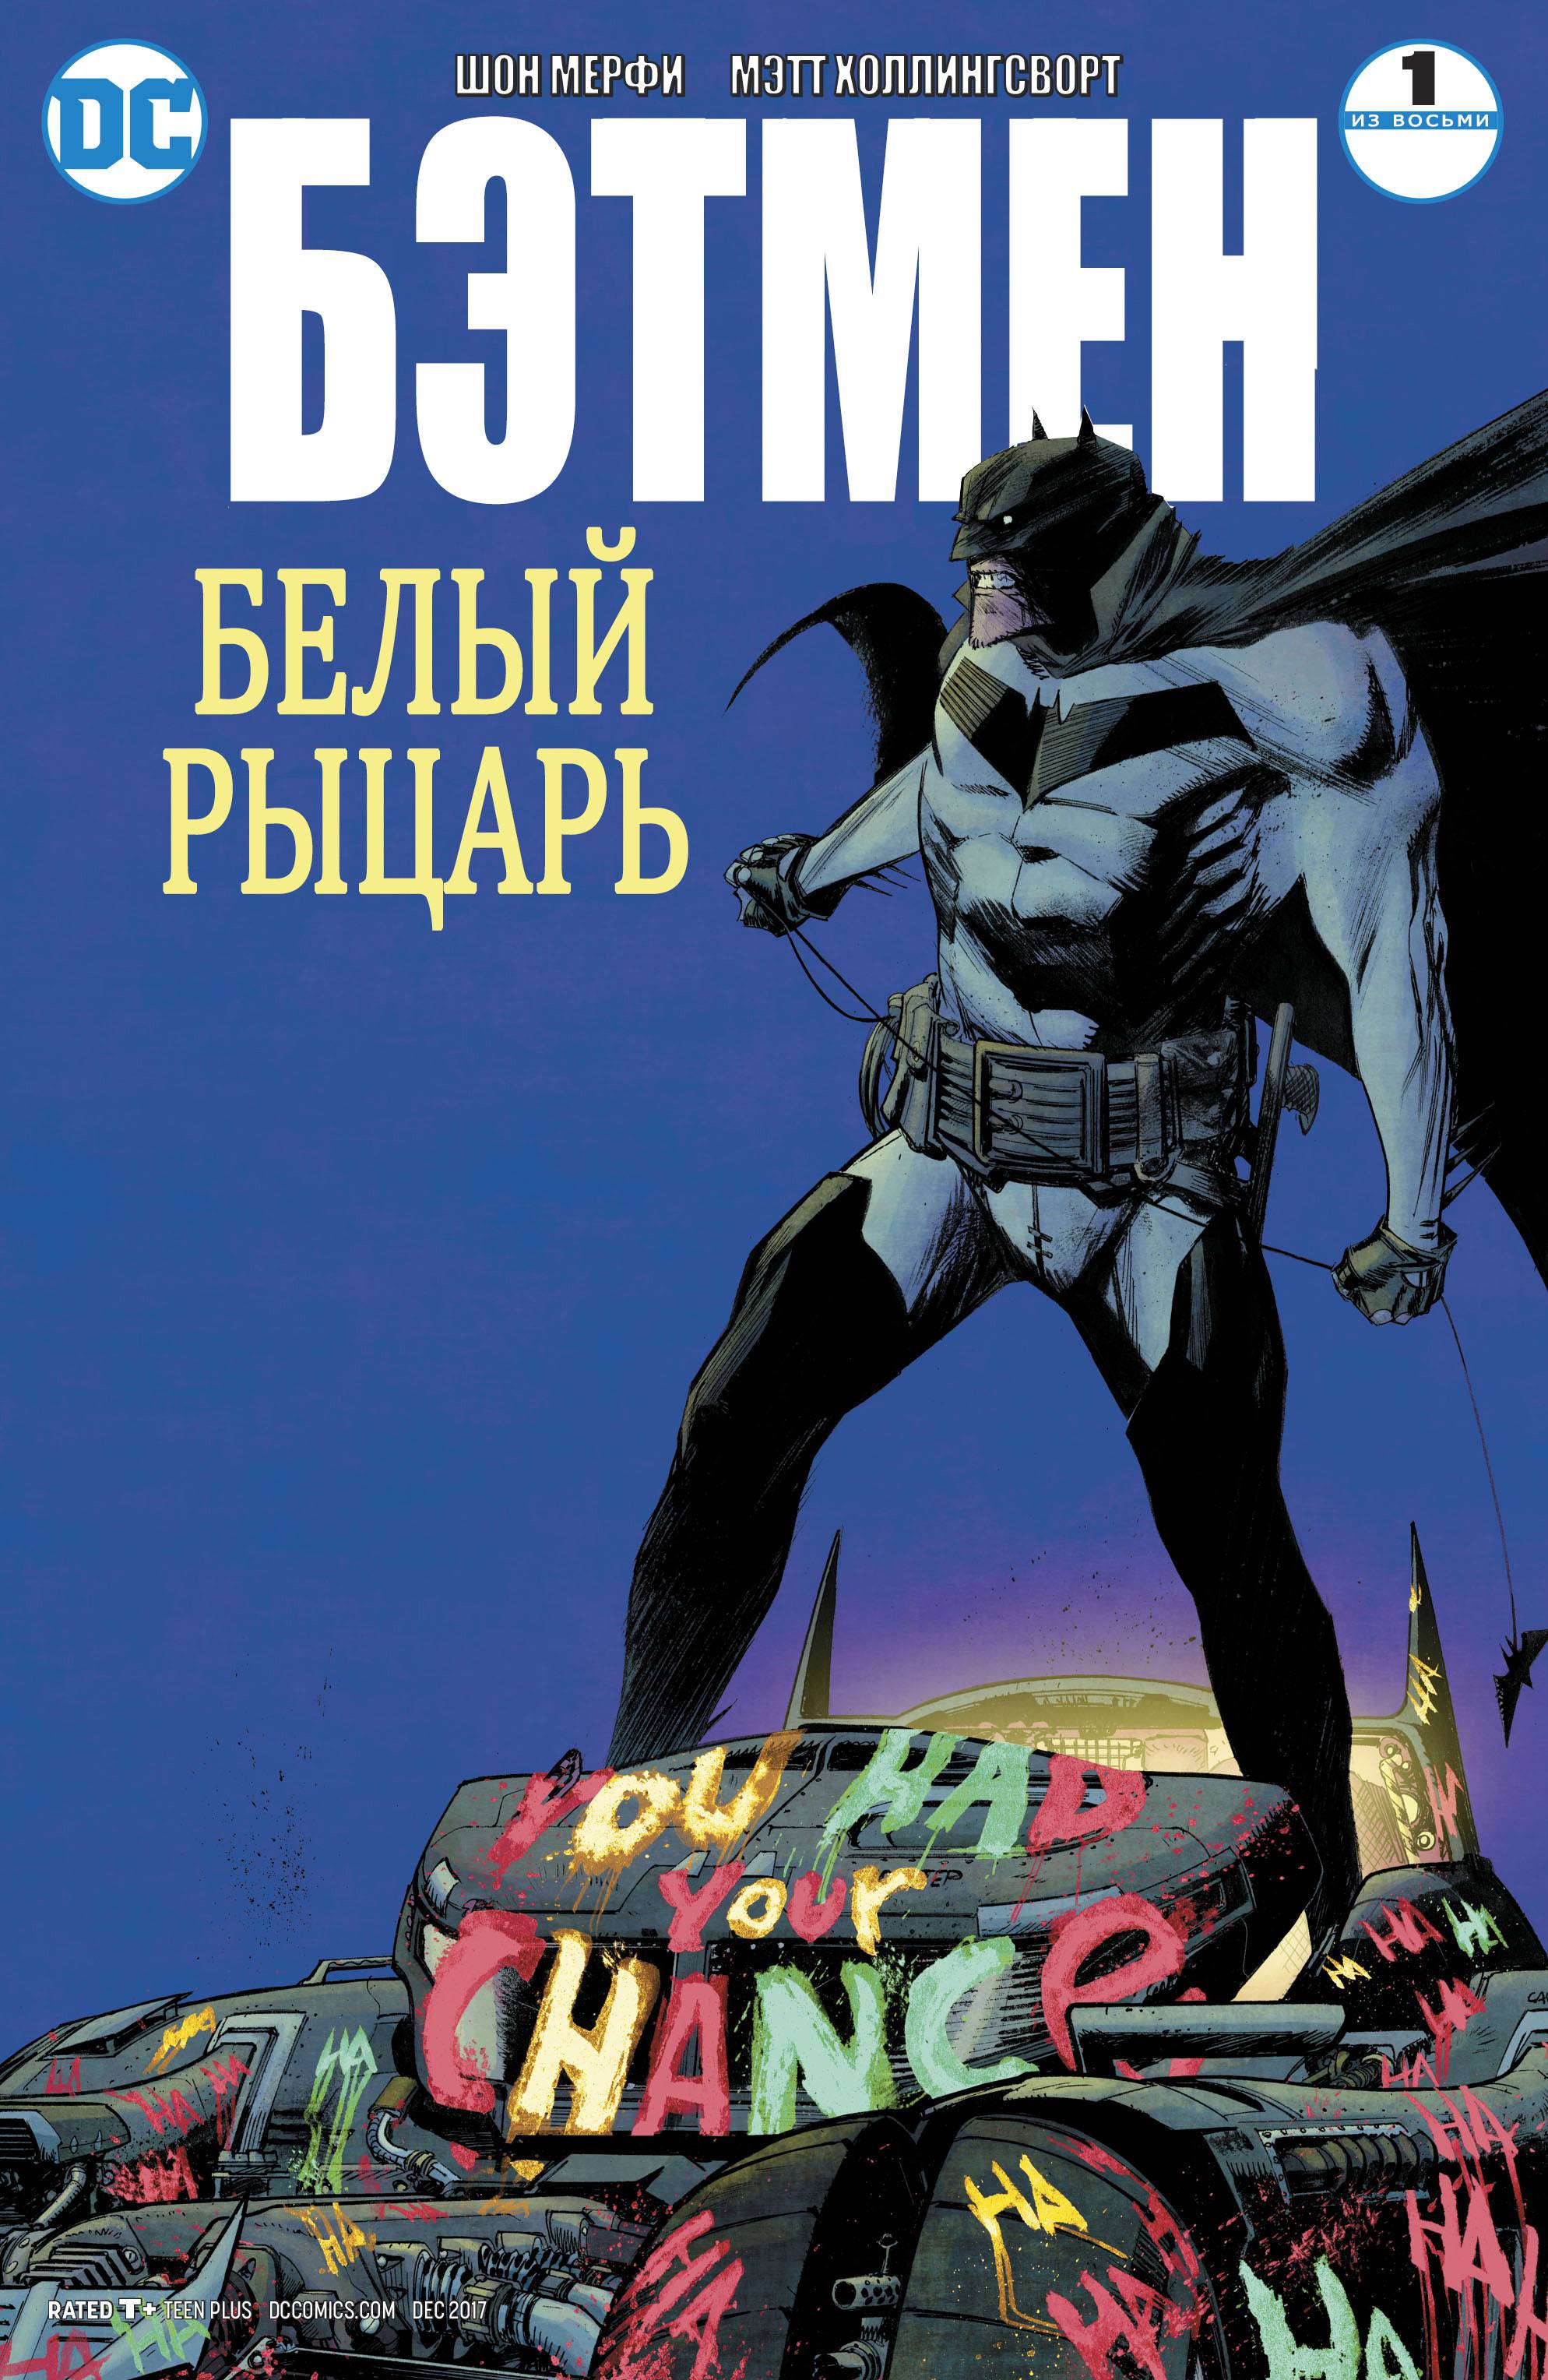 Бэтмен: Белый Рыцарь №1 онлайн